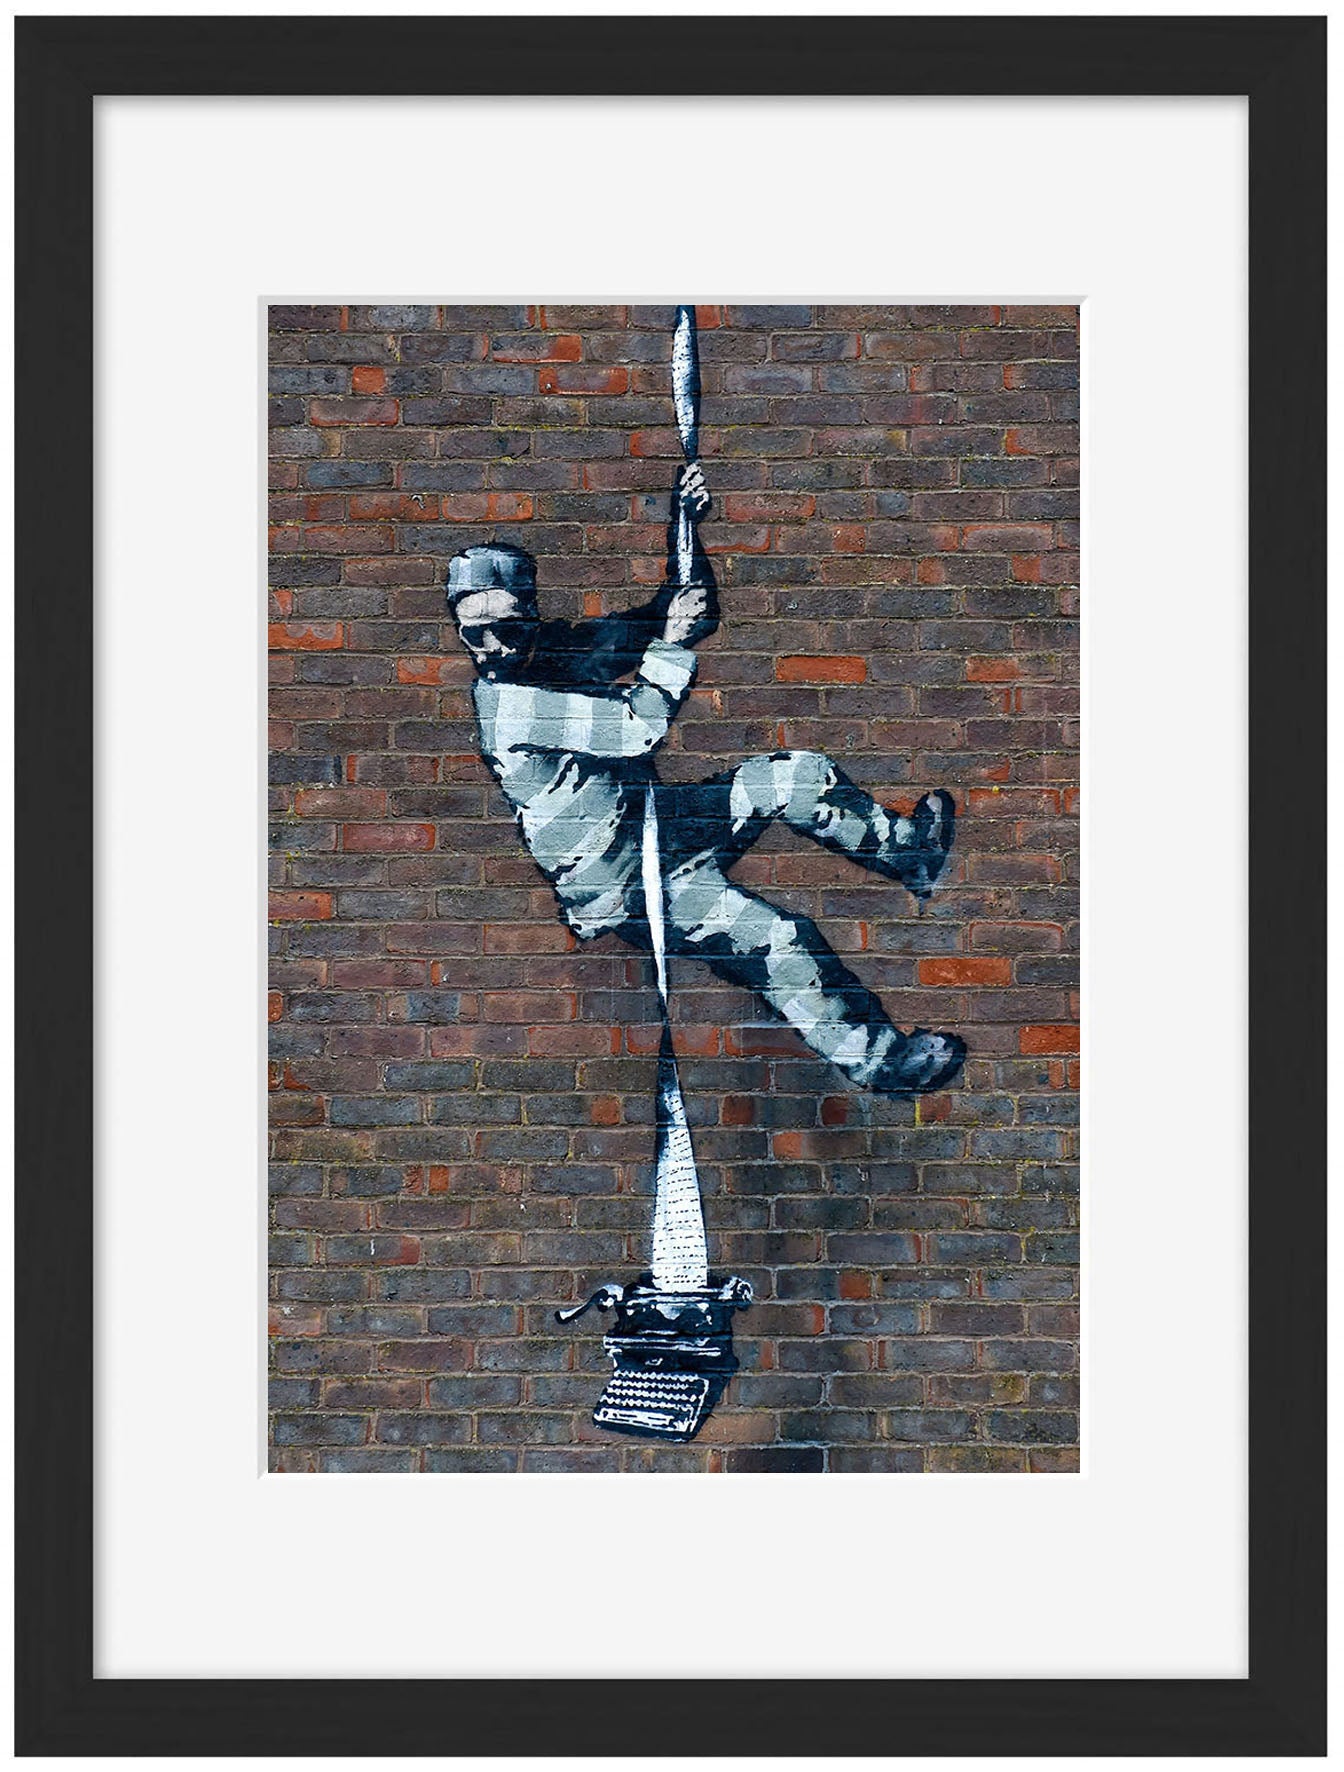 Escaping Prisoner-banksy, print-Framed Print-30 x 40 cm-BLUE SHAKER